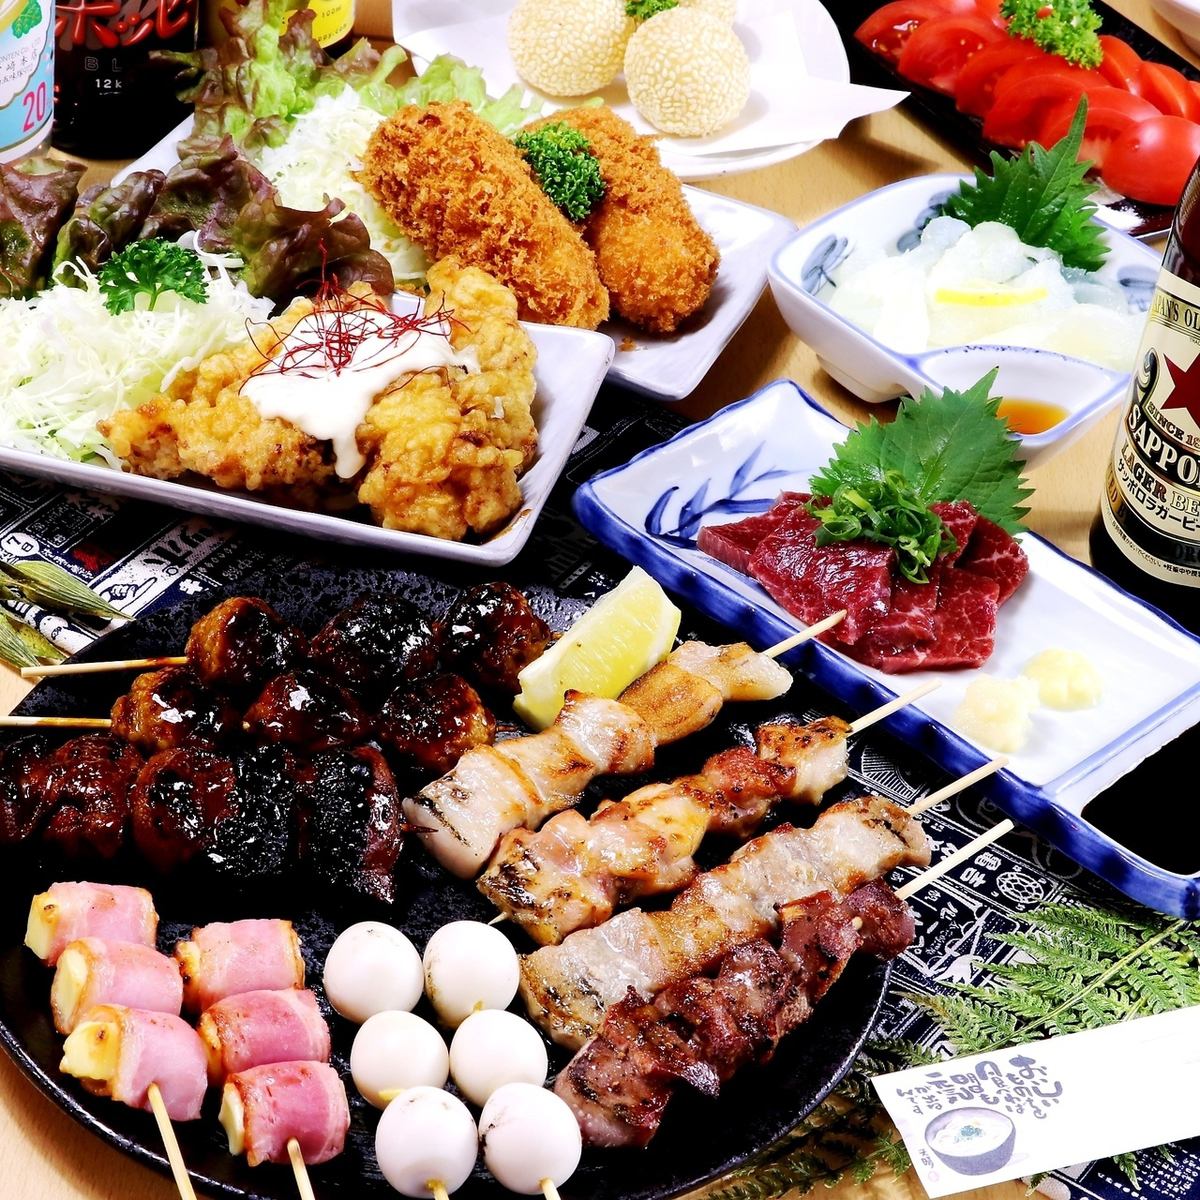 炭烤串、烤鸡肉串、马肉生鱼片等110种自助餐和饮品。